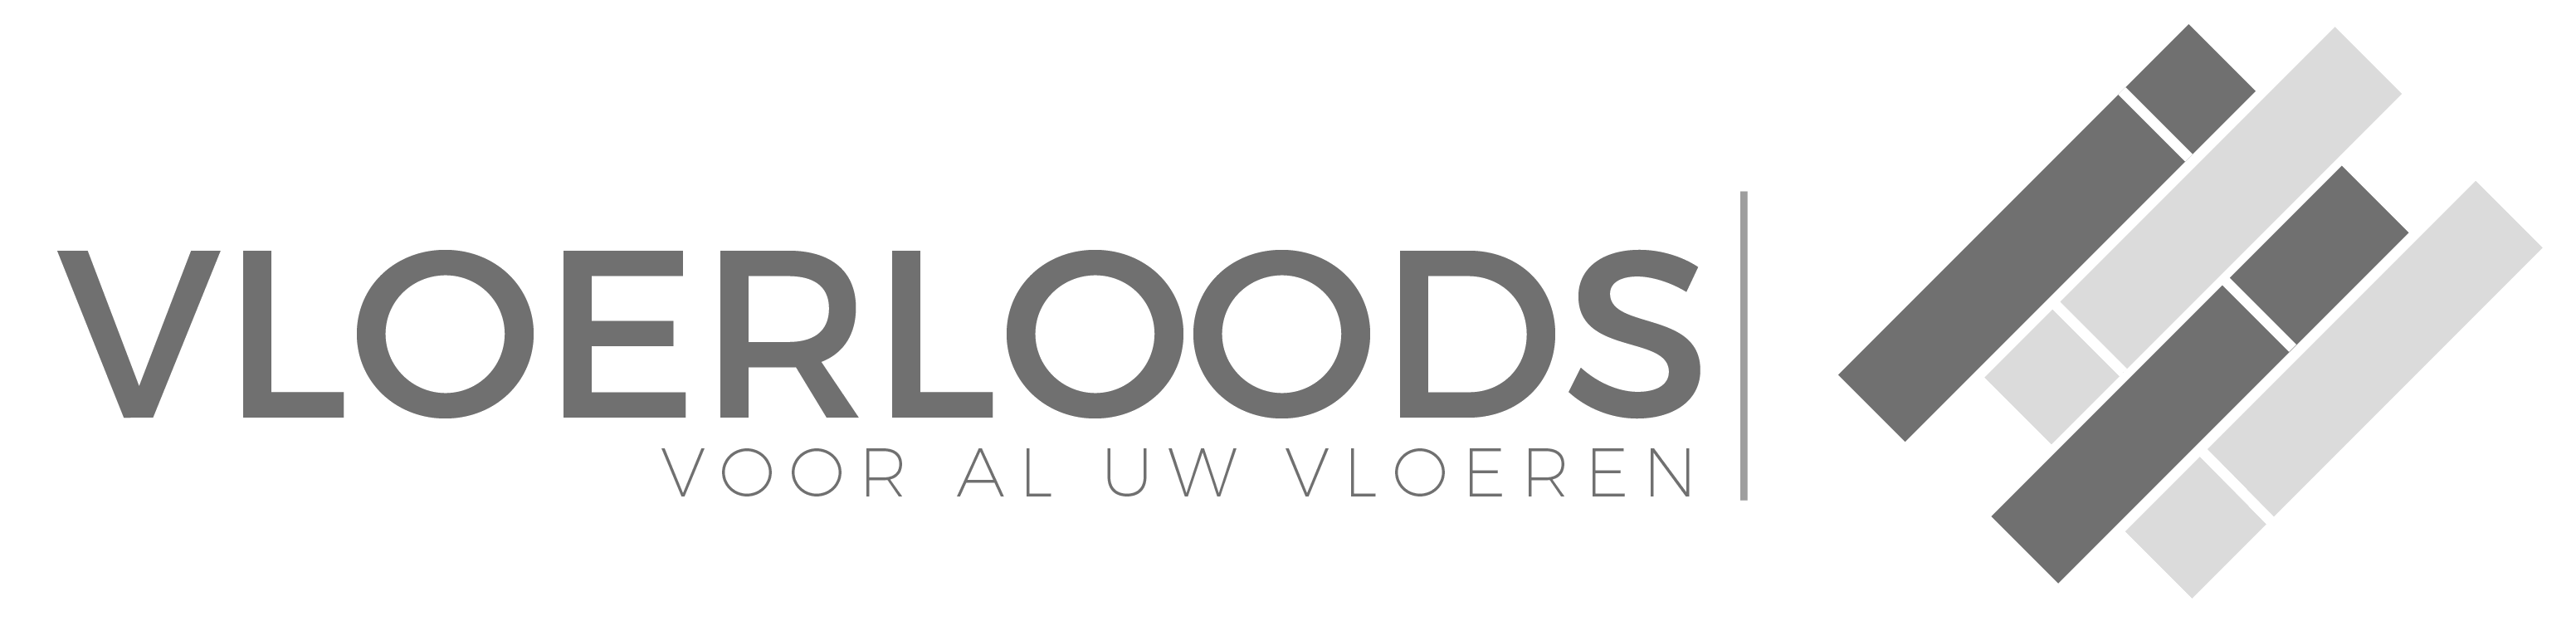 Vloeren van Vloerloods.nl